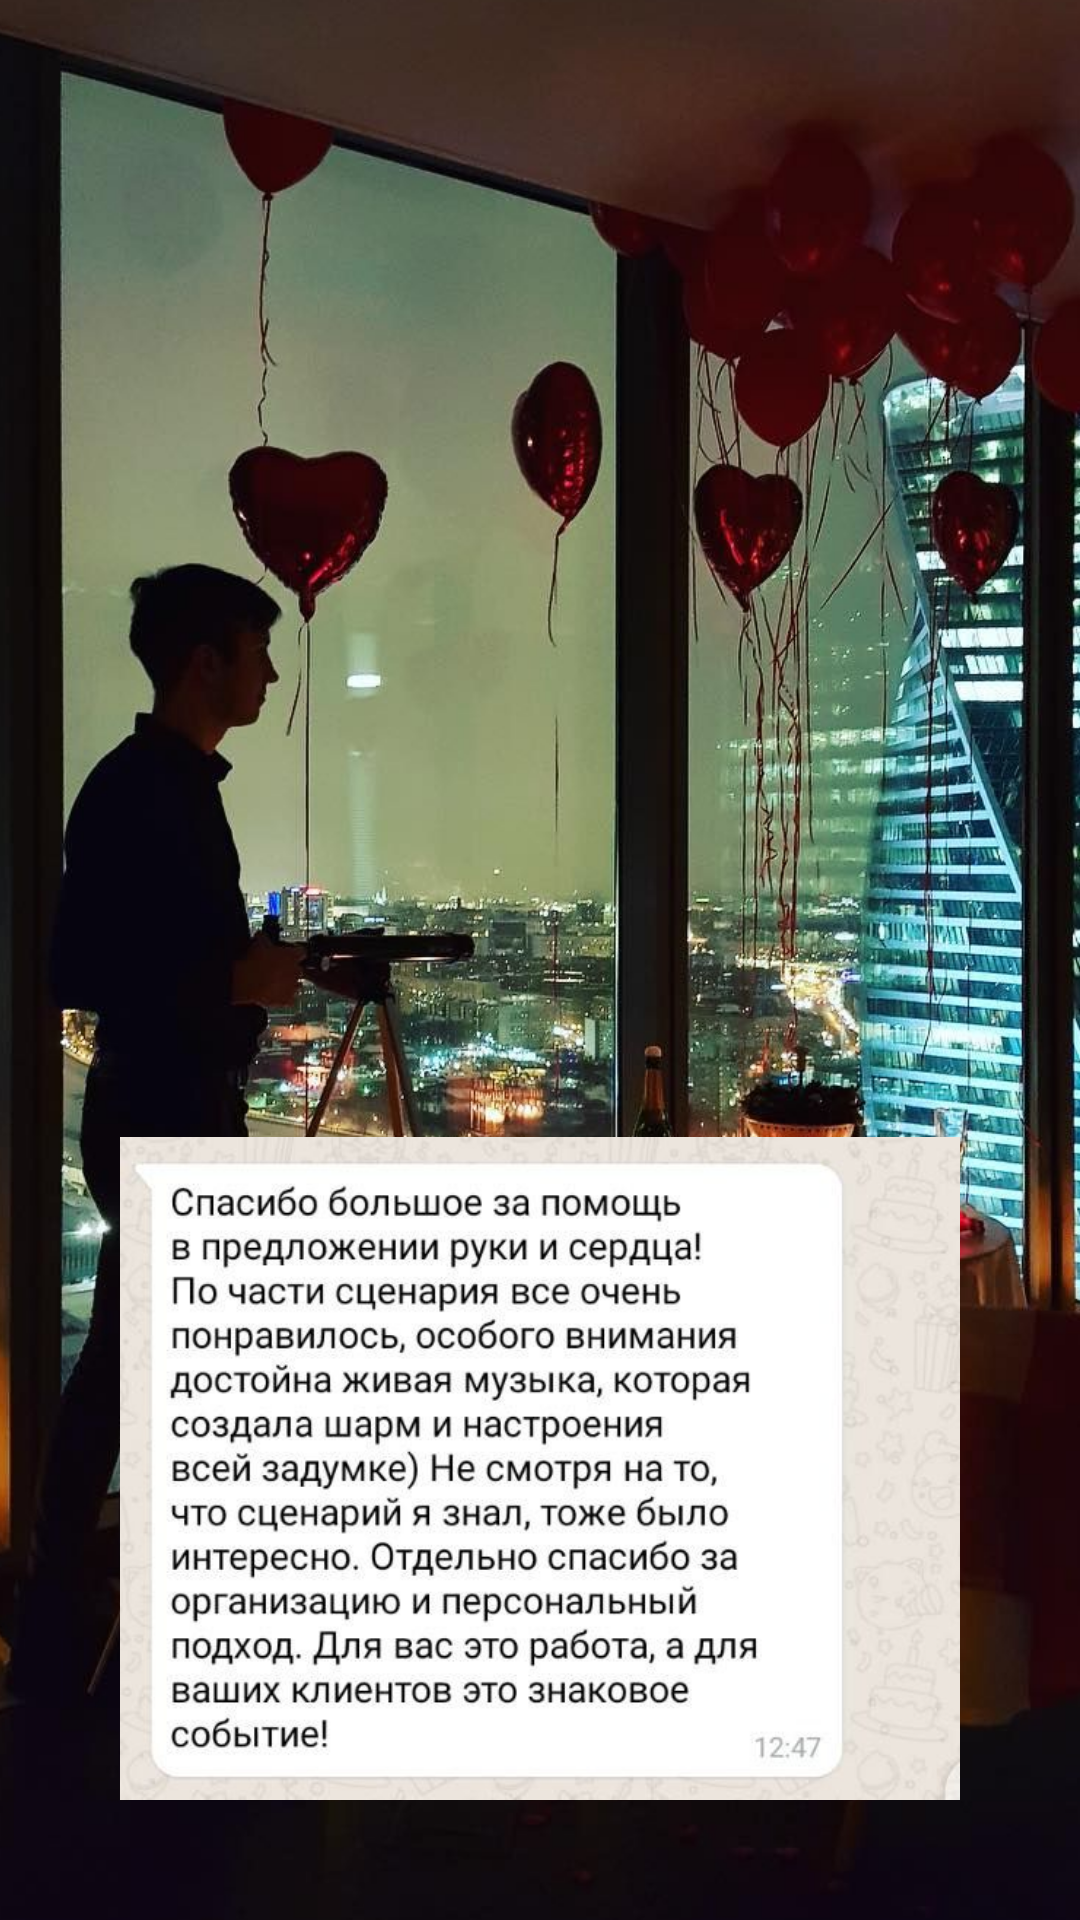 Организация предложения руки и сердца в Кирове
от компании Pandaevent